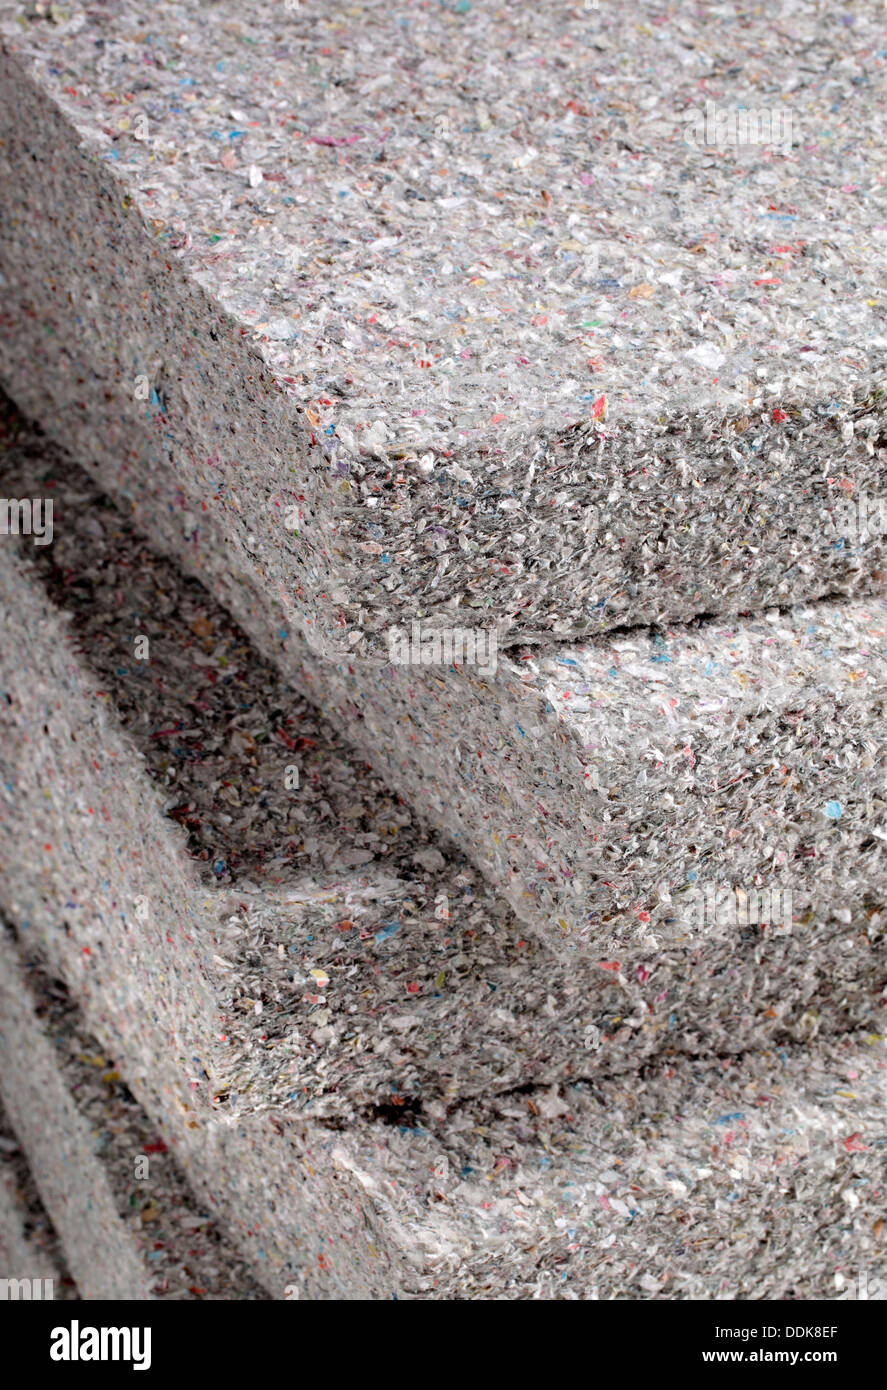 Stapel von Zellulose Isolierung Batt Platten, aus recyceltem Zeitungspapier, als Gebäude-Wärmedämmung verwendet. Stockfoto